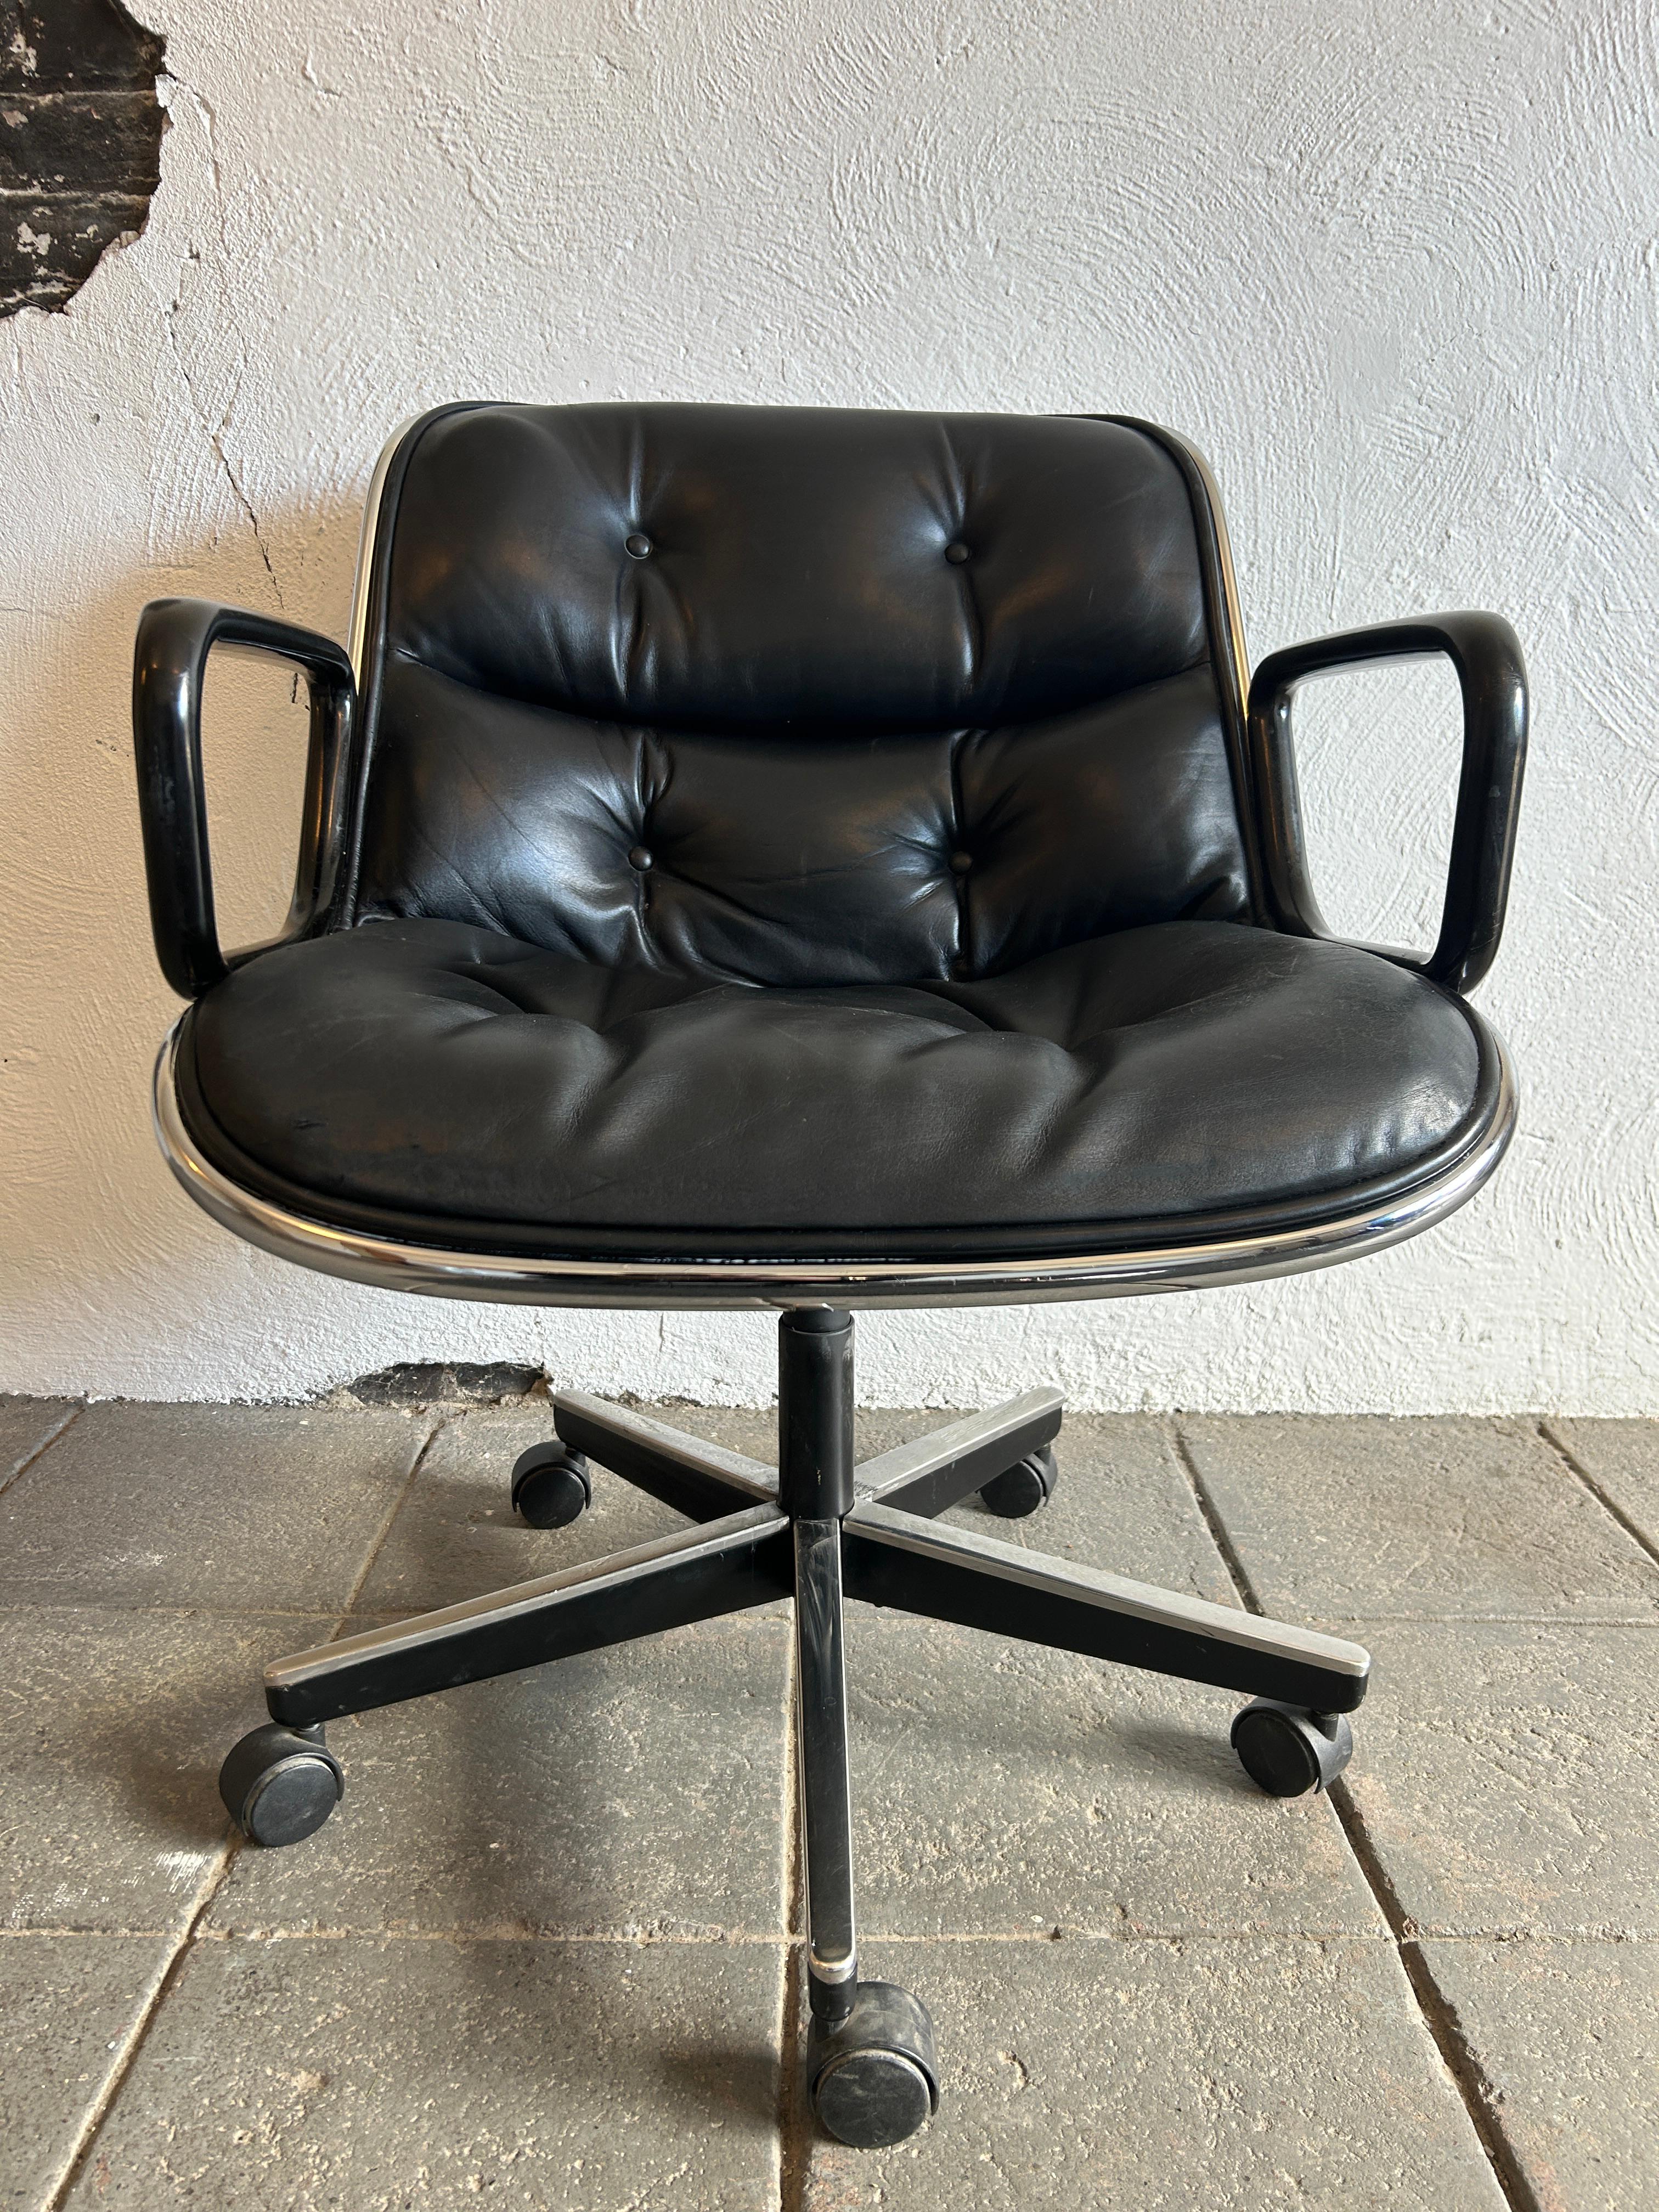 (1) Charles Pollock Stuhl für Knoll mit verchromtem Gestell und schwarzer Lederpolsterung. Pollock-Stühle sind Ikonen des Mid-Century Modern Design. Mit der Einführung dieses Stuhls in den 1960er Jahren revolutionierte Pollock das Sitzen im Büro.